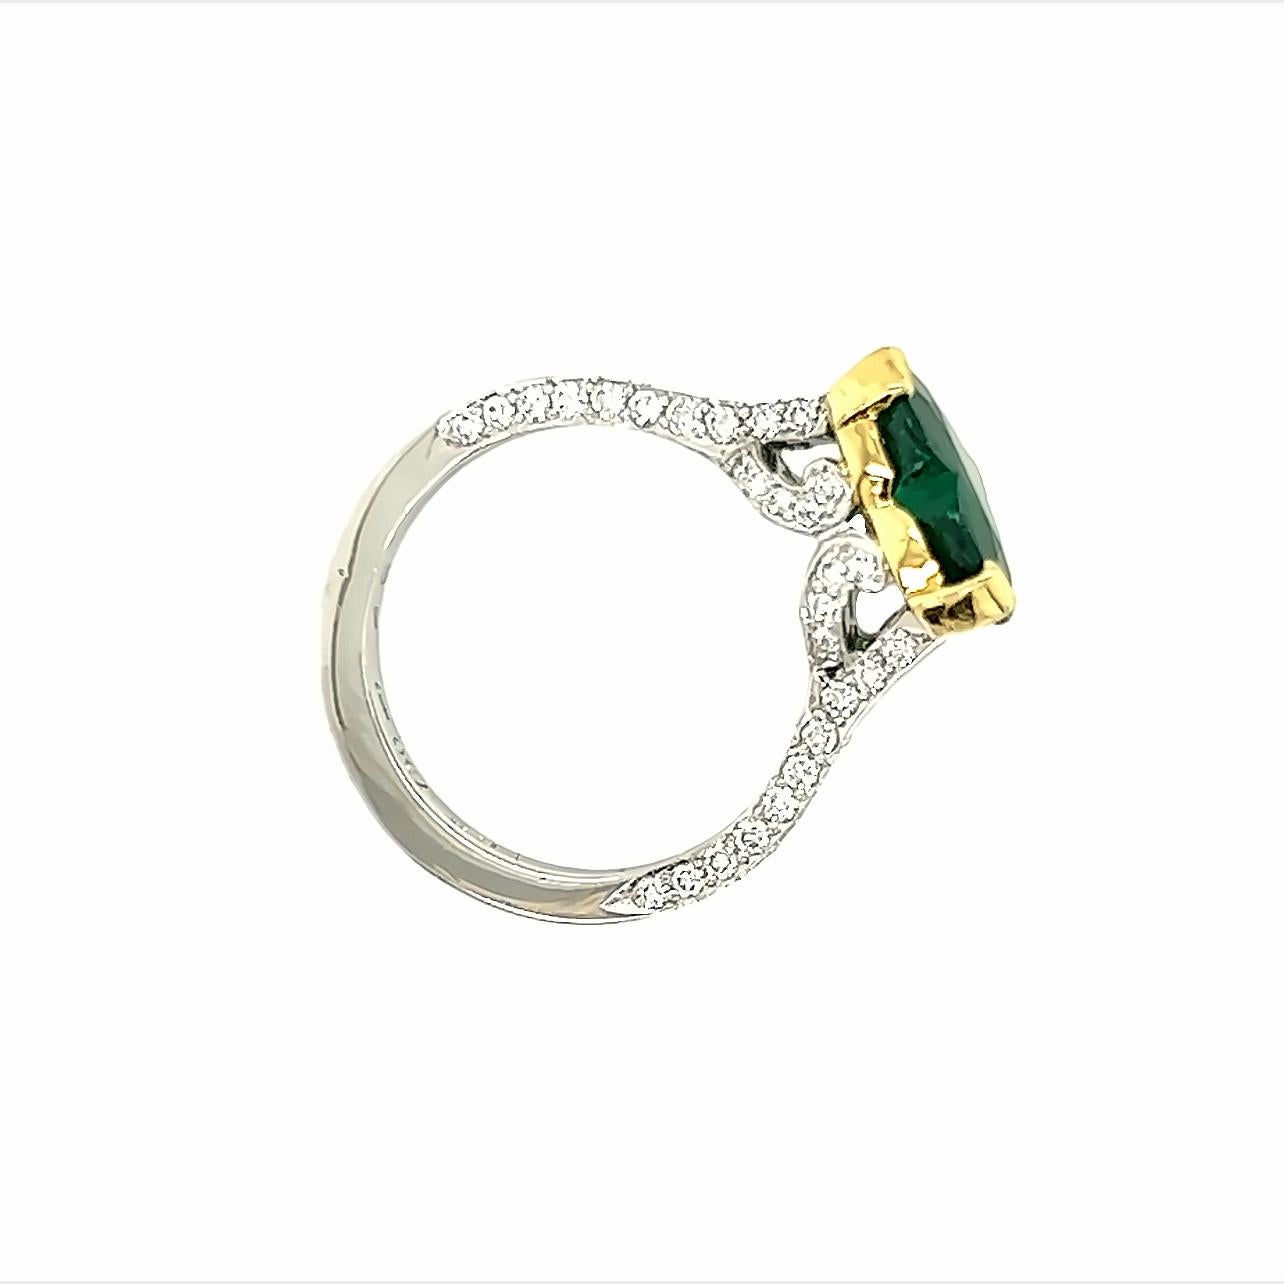 Dieser atemberaubende Ring ist ein wahres Kunstwerk mit einem wunderschönen herzförmigen Smaragd, der etwa 2,30 Karat wiegt. Der Smaragd ist in eine wunderschöne Fassung aus Platin und 18 Karat Gelbgold gefasst, die den satten Grünton des Edelsteins